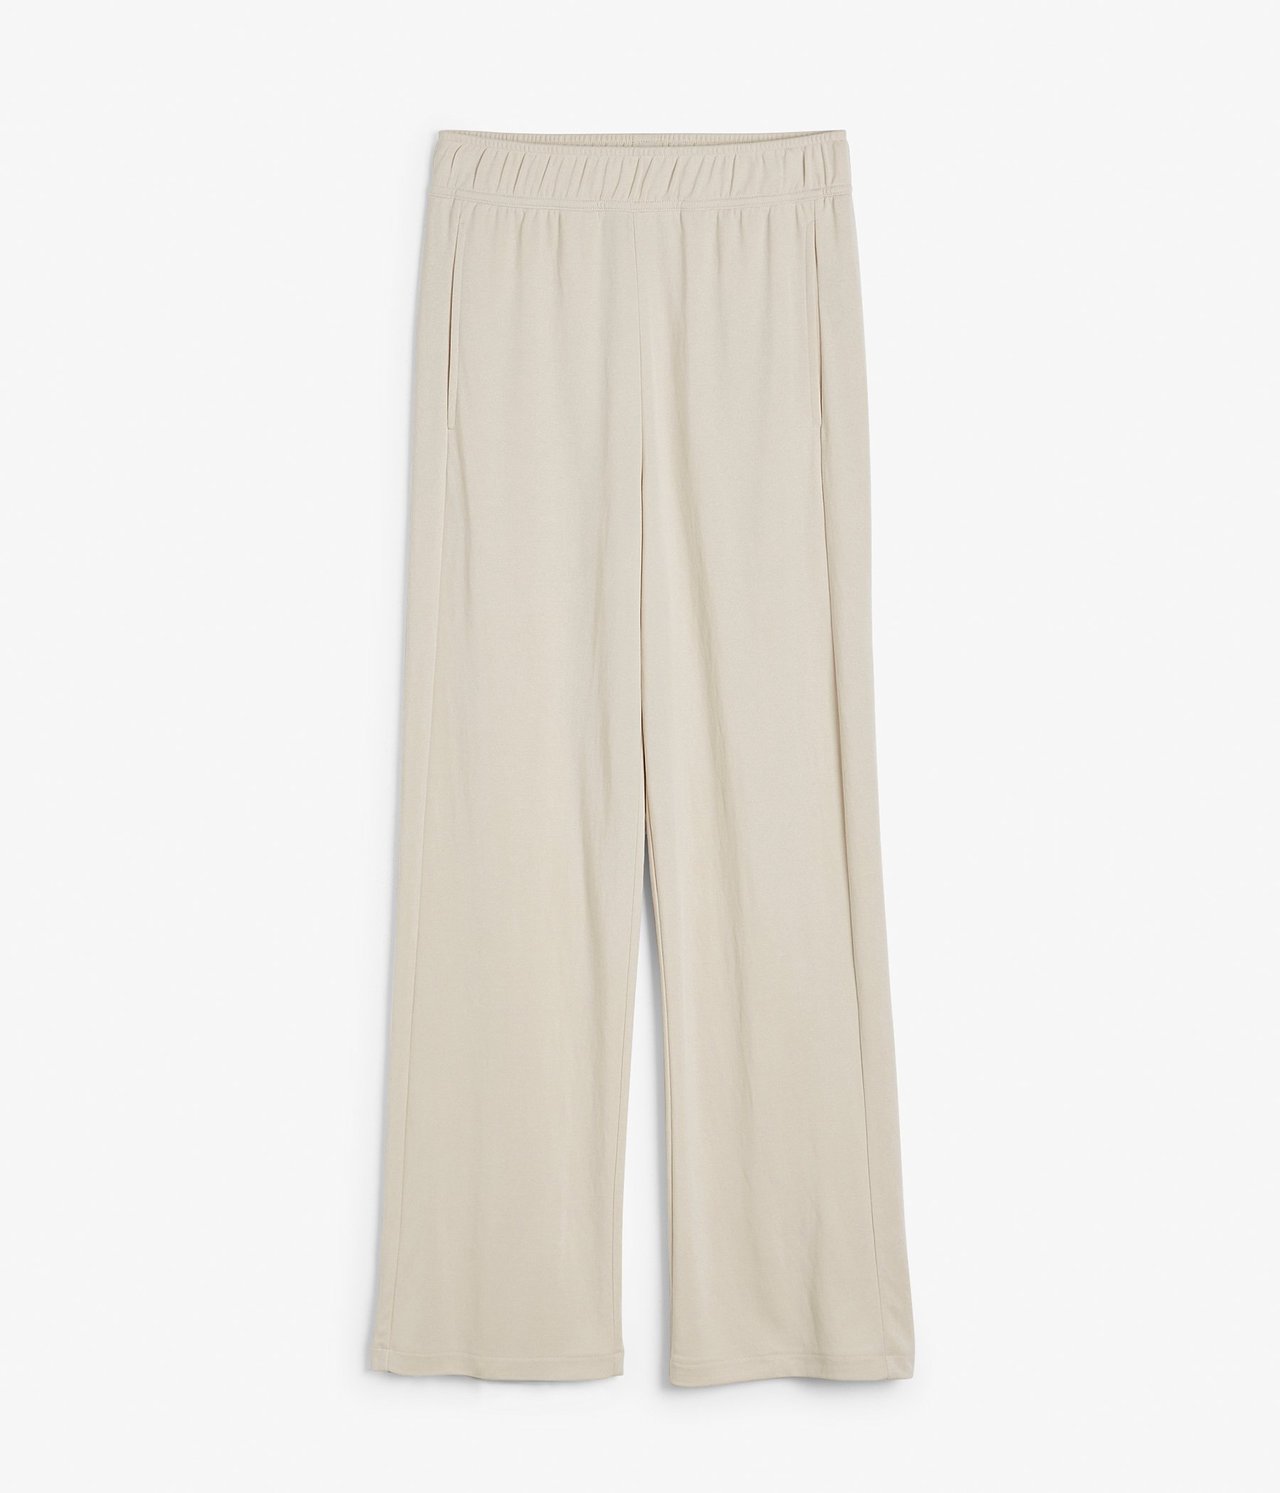 Bukse Loungewear Lys beige - null - 1